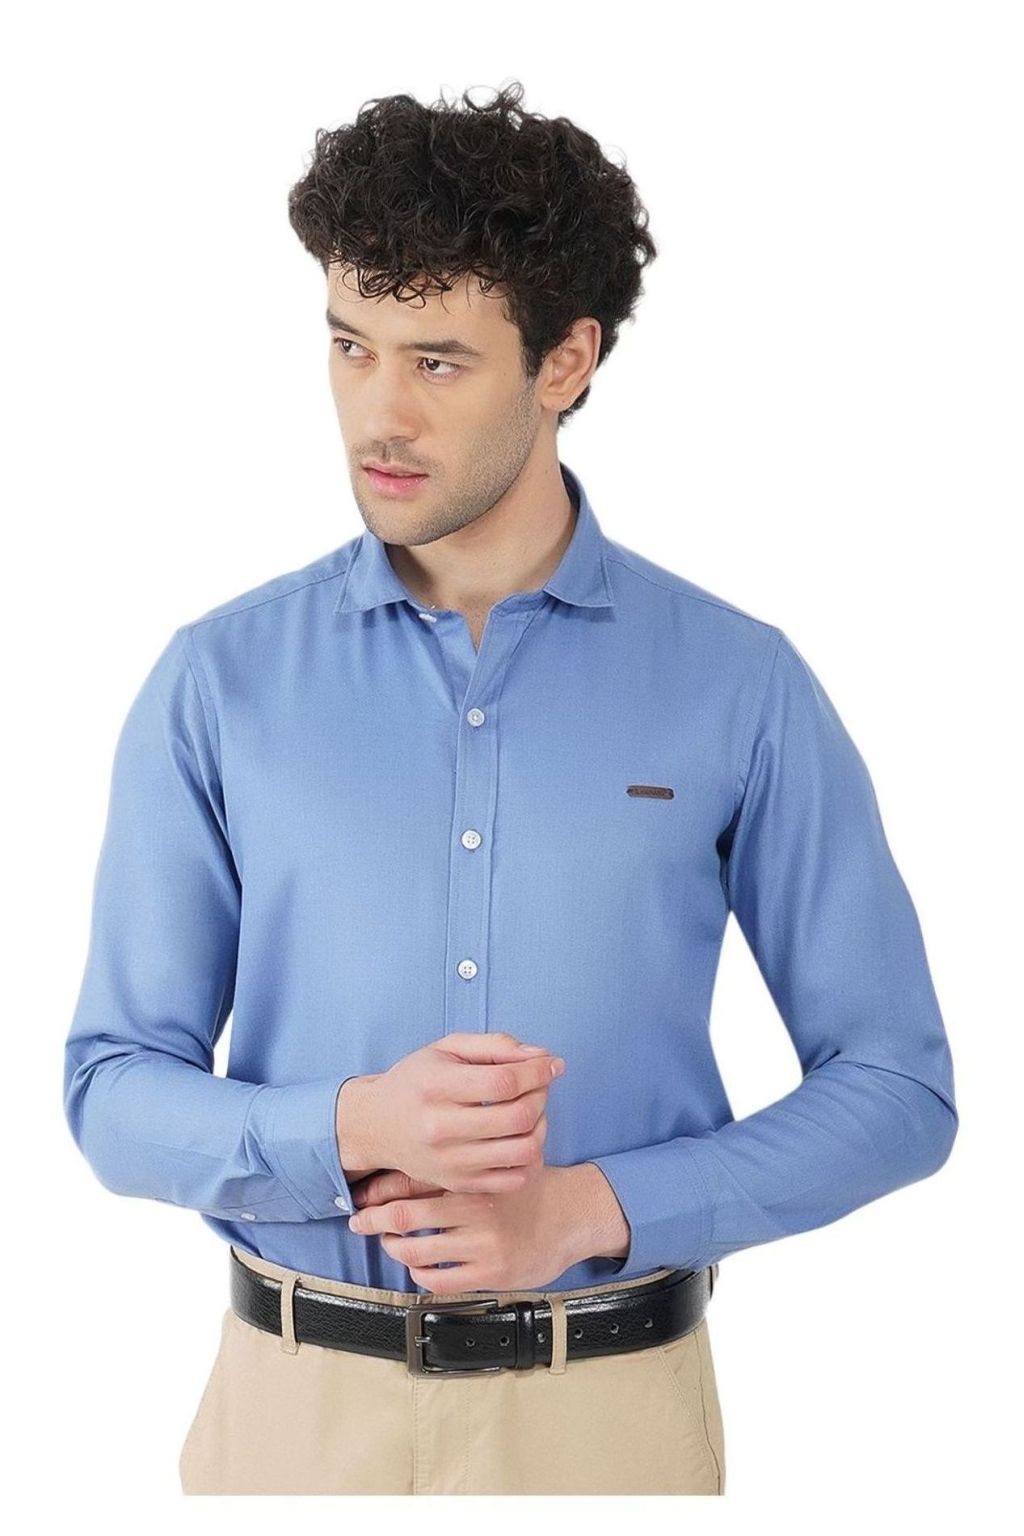 Denim Blue Color Shirt Blouse | Ritz Fashion Trendz